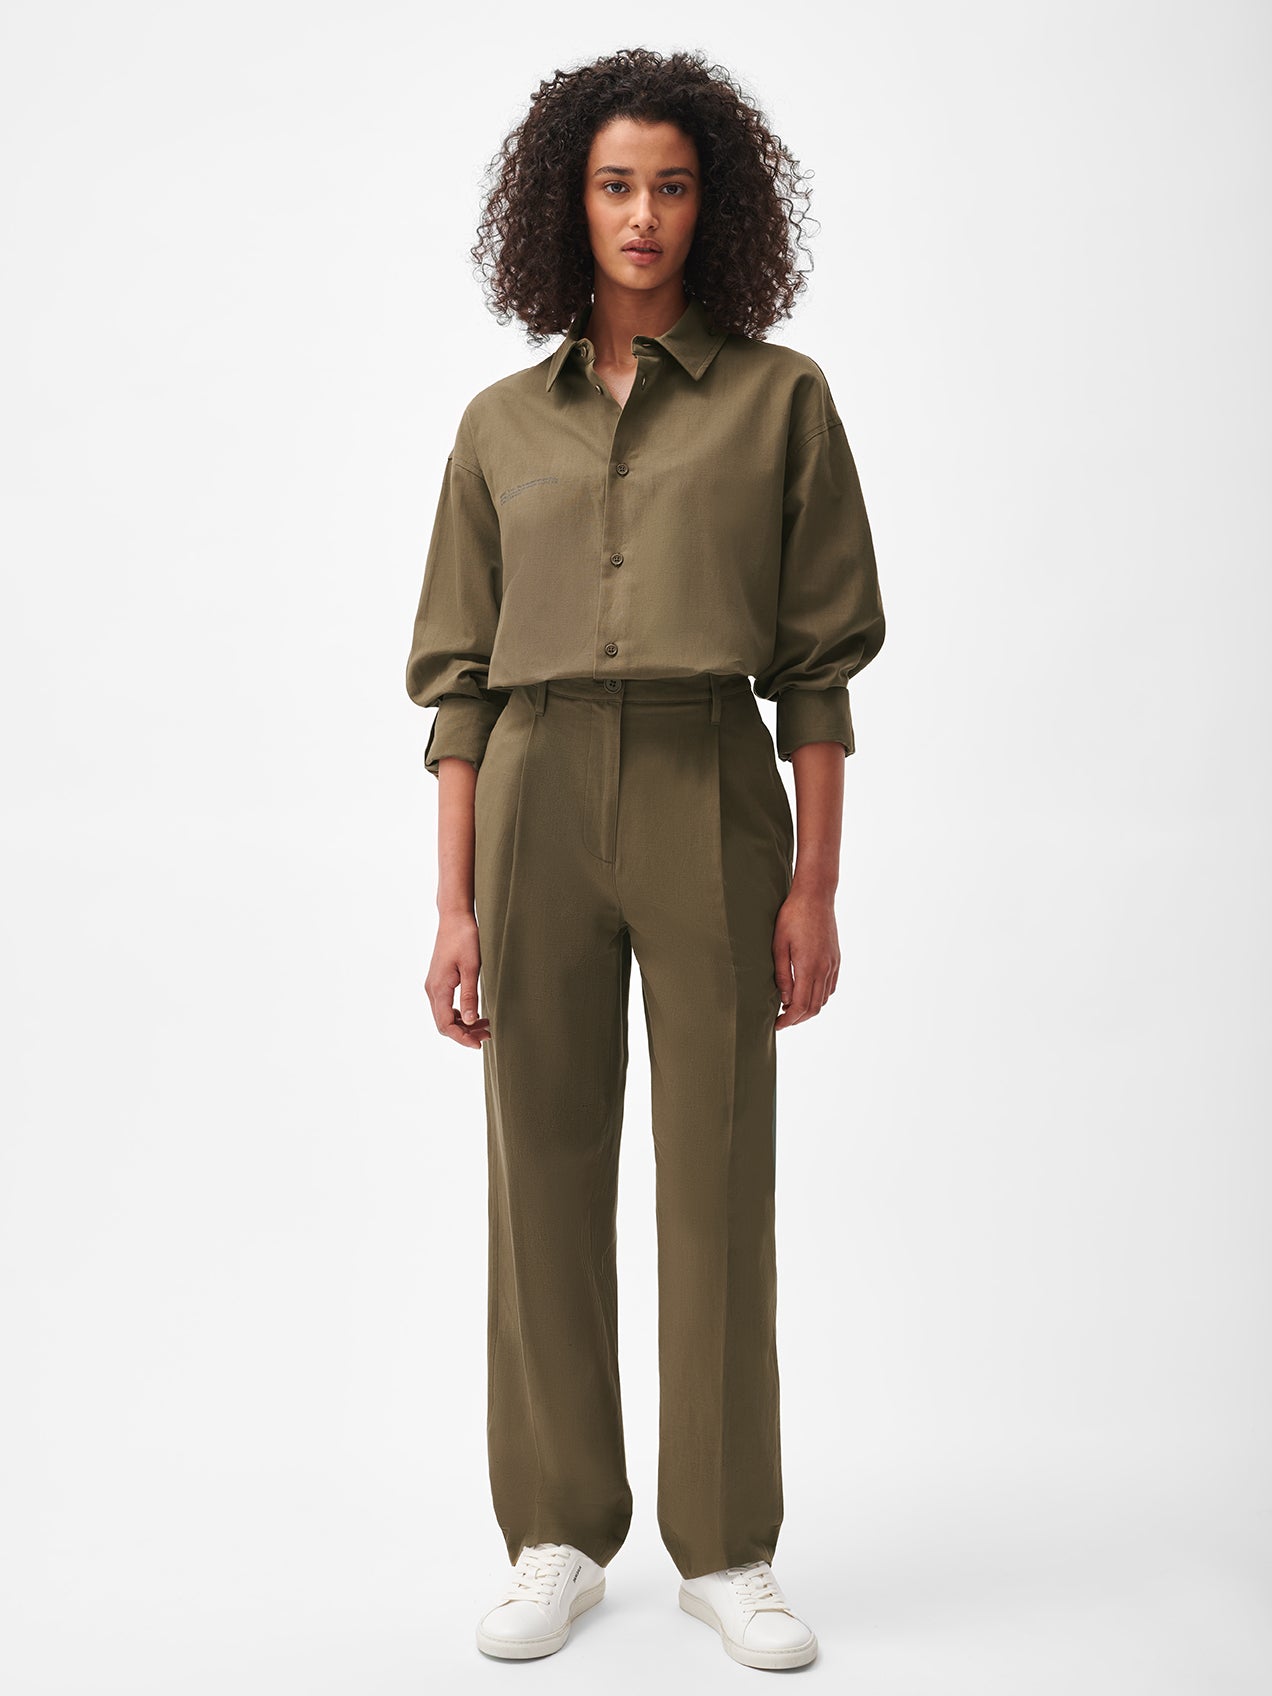 Womens-Cotton-Linen-Trouser-Soil-Brown-Model-Female-1